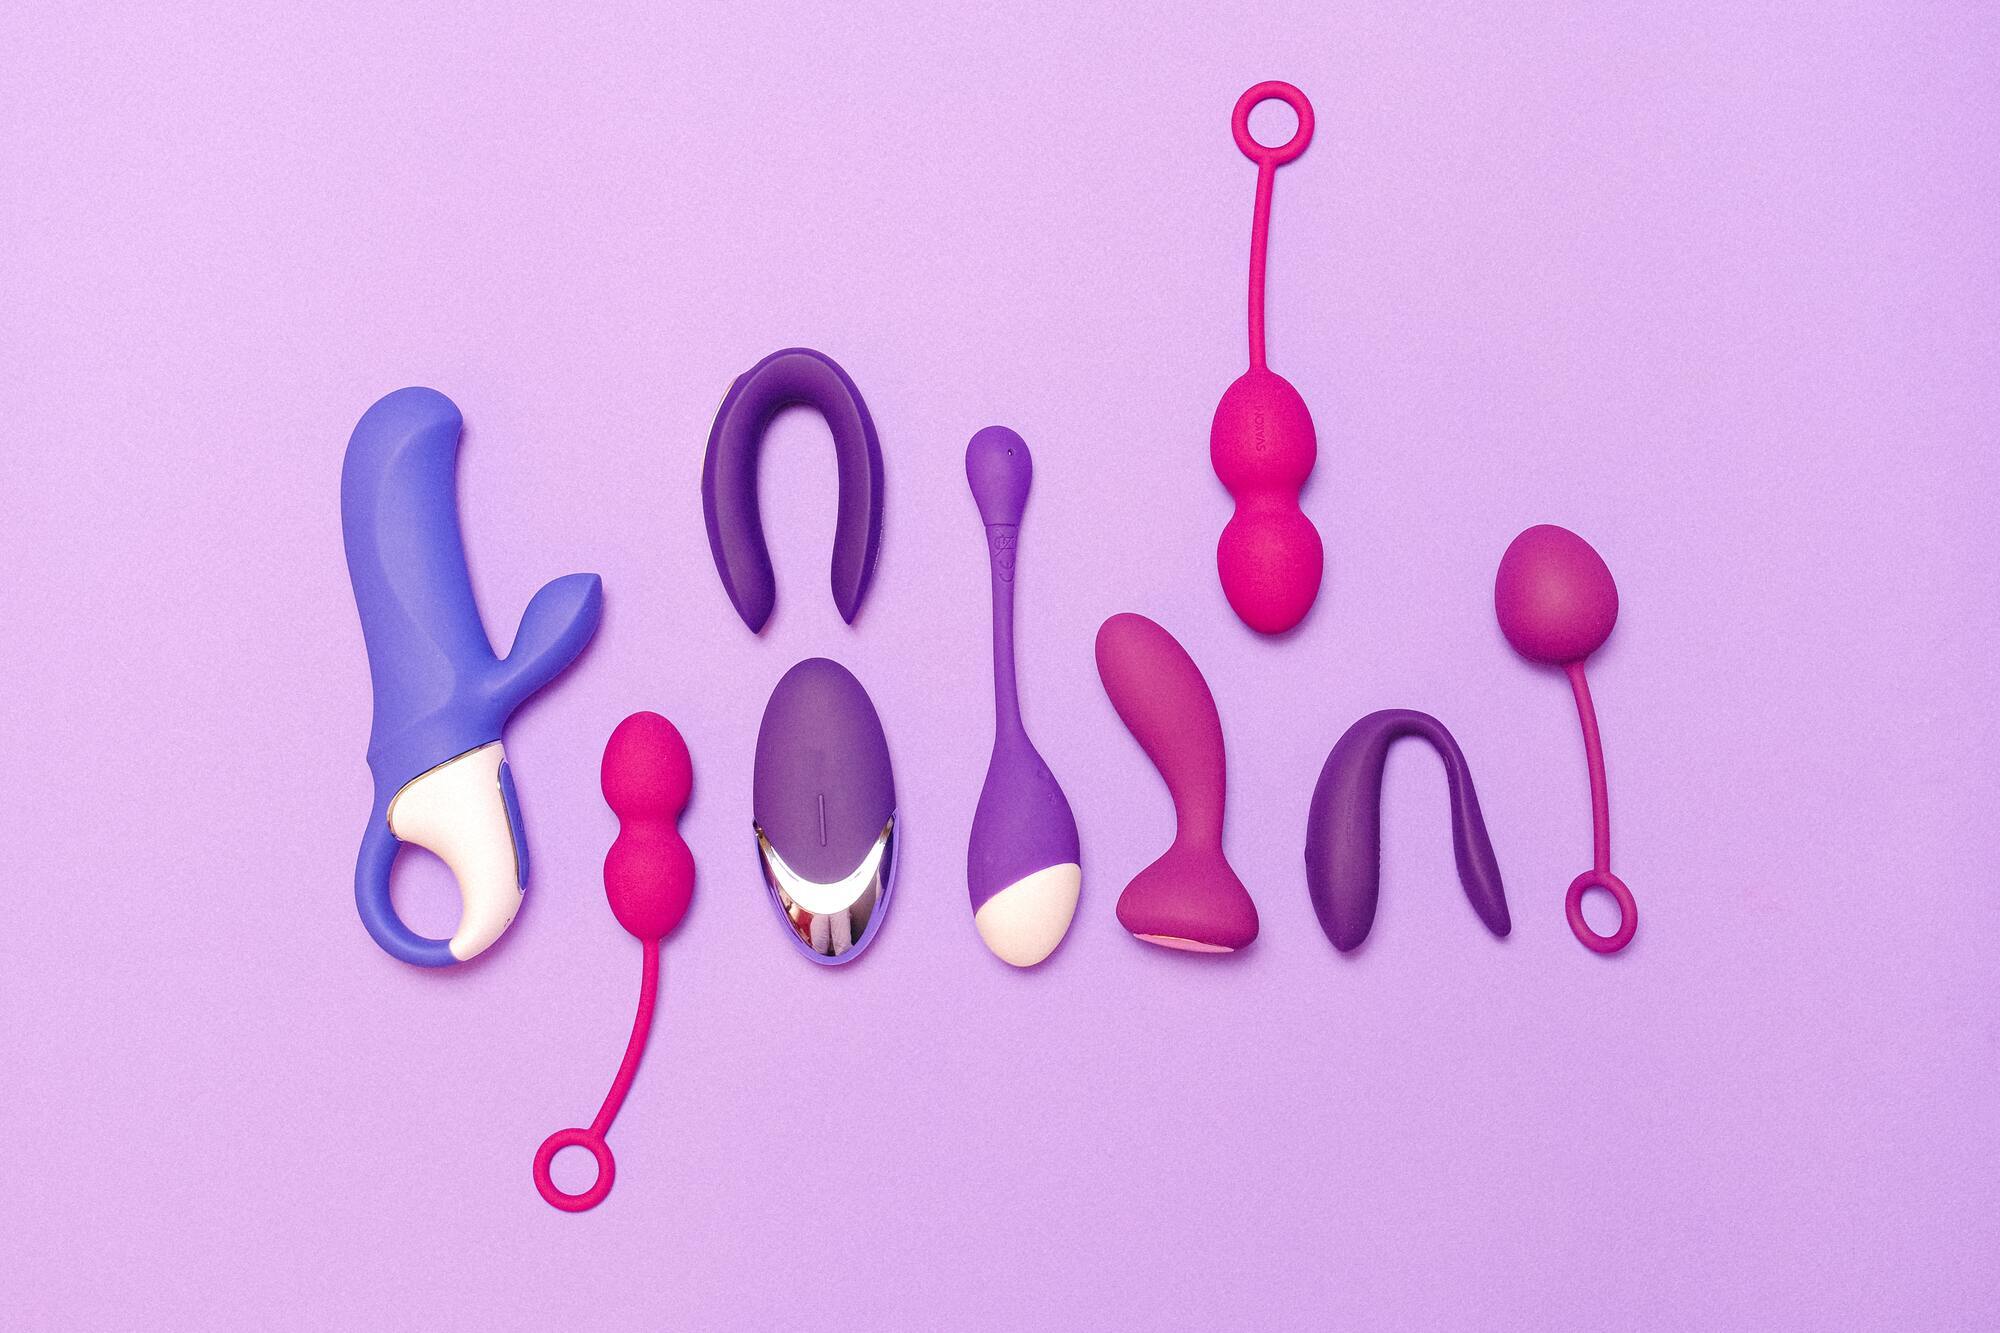 Наявність секс-іграшки не характеризує сексуального життя людини